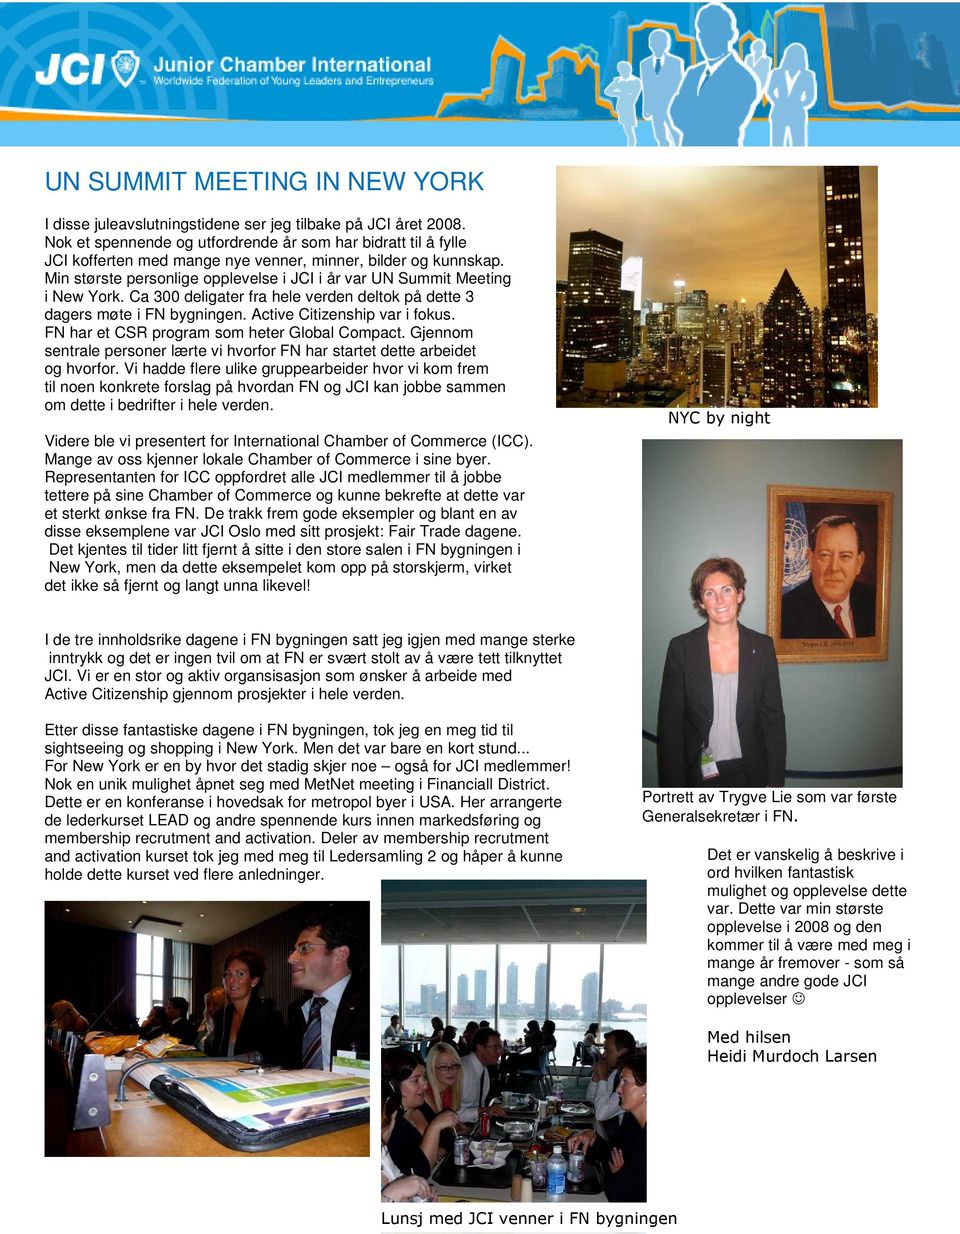 Min største personlige opplevelse i JCI i år var UN Summit Meeting i New York. Ca 300 deligater fra hele verden deltok på dette 3 dagers møte i FN bygningen. Active Citizenship var i fokus.